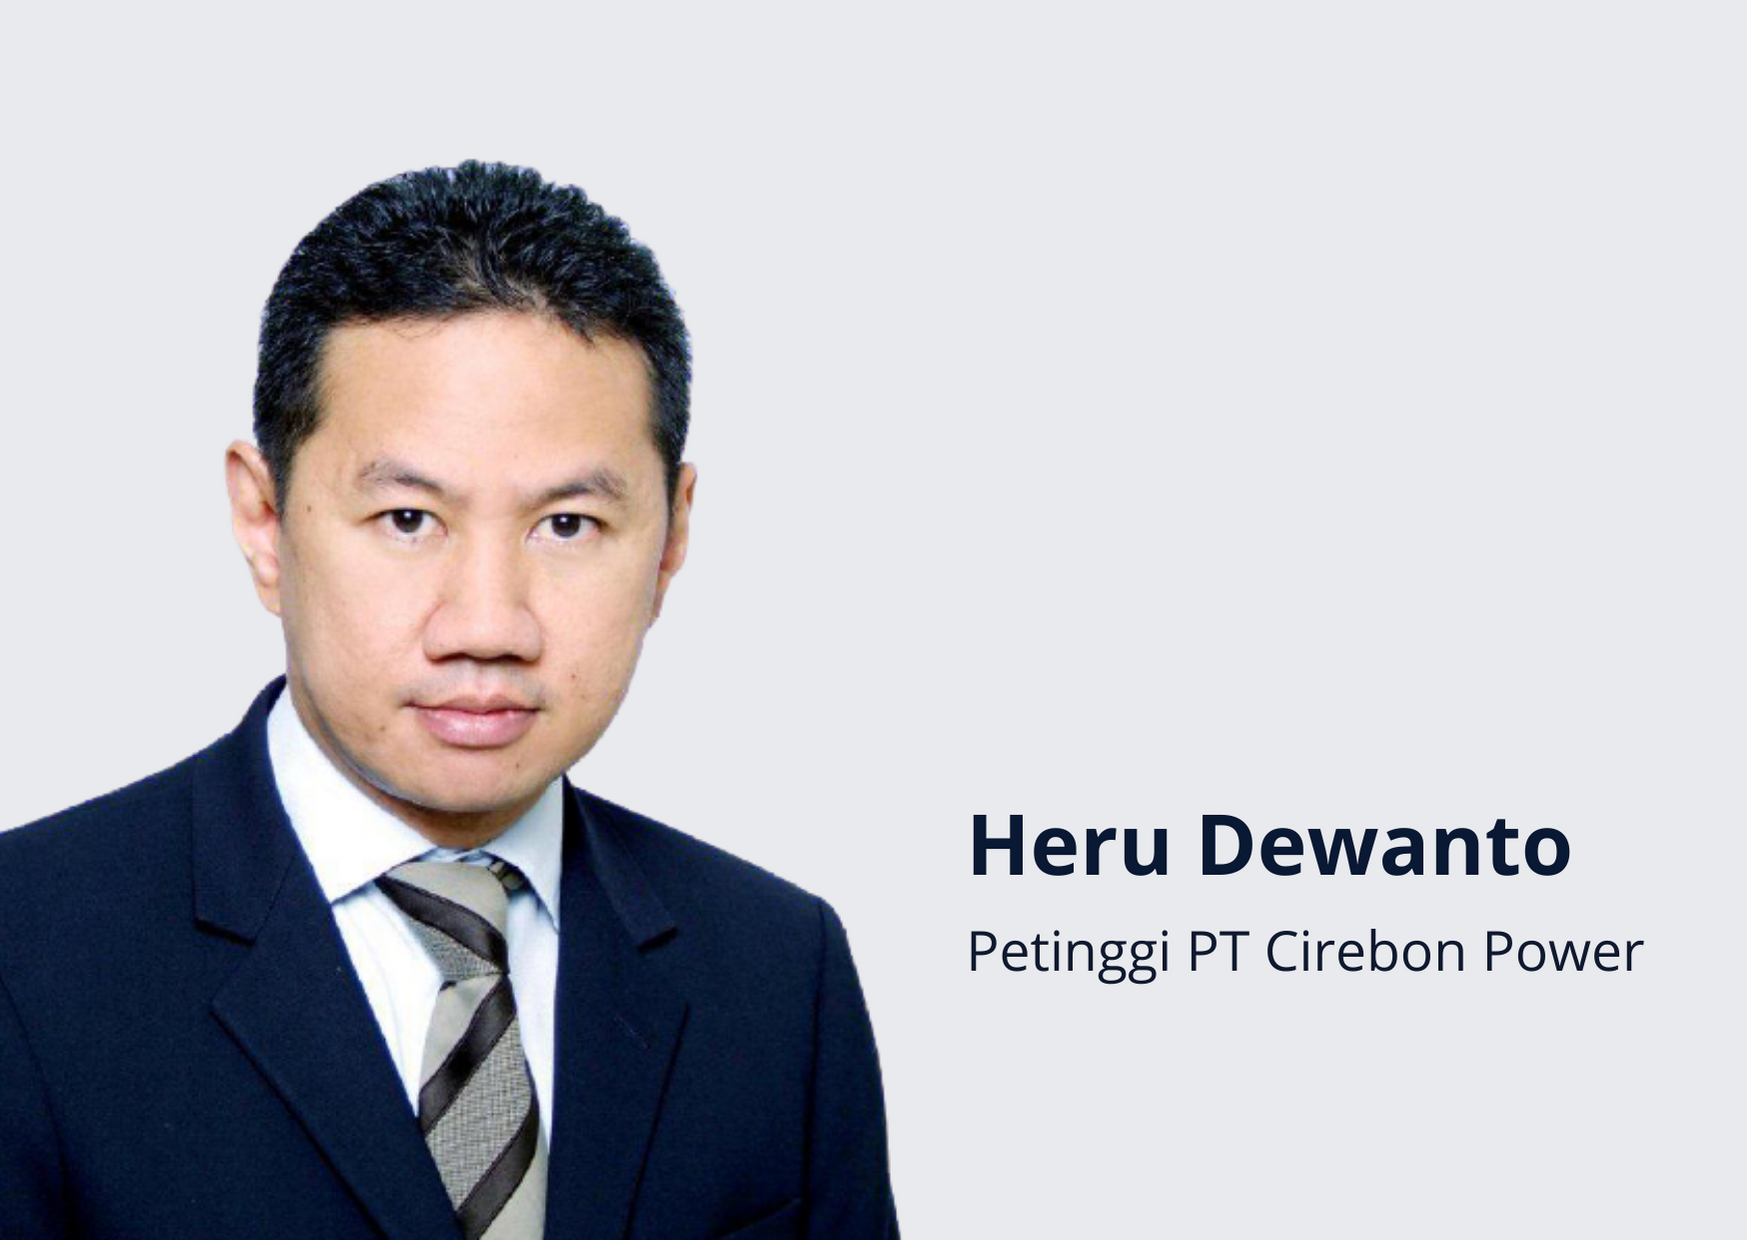 All about Heru Dewanto